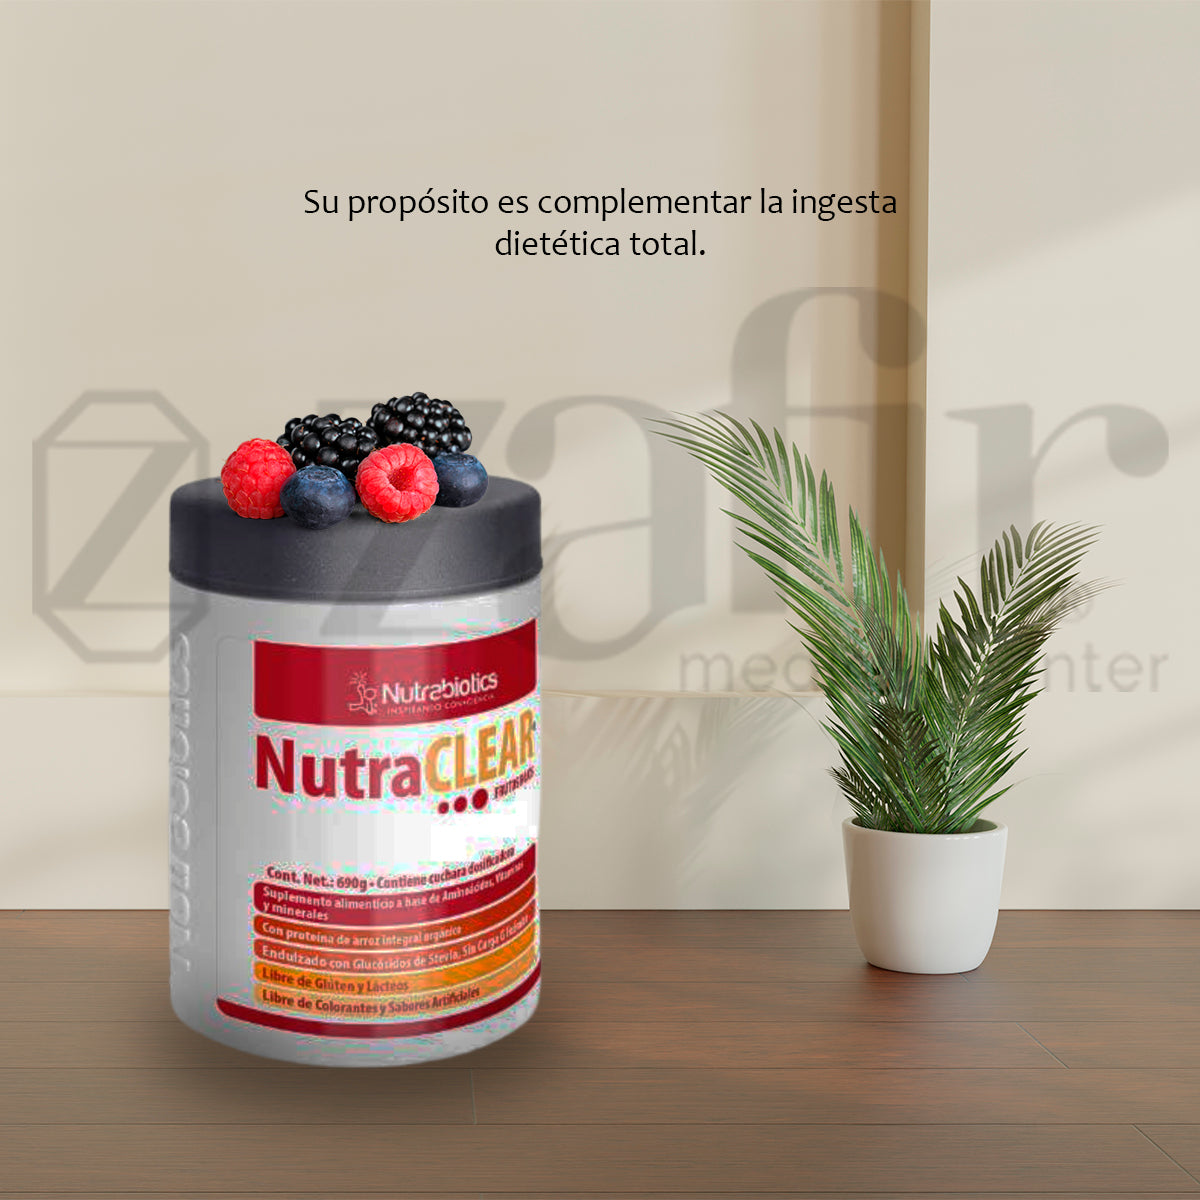 Nutrabiotics NutraCLEAR Frutos Rojos (690 g)